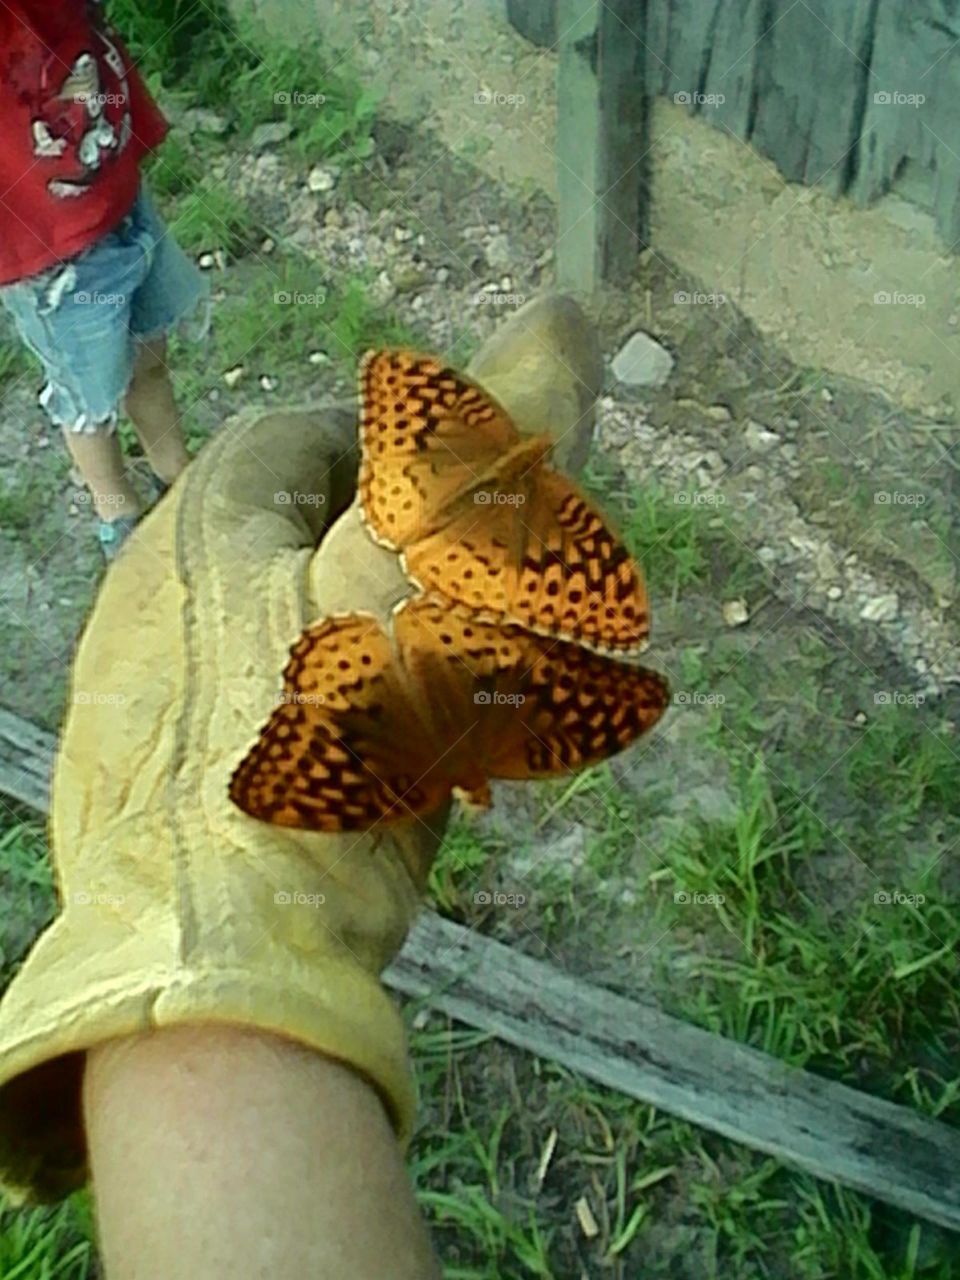 Butterflies on glove